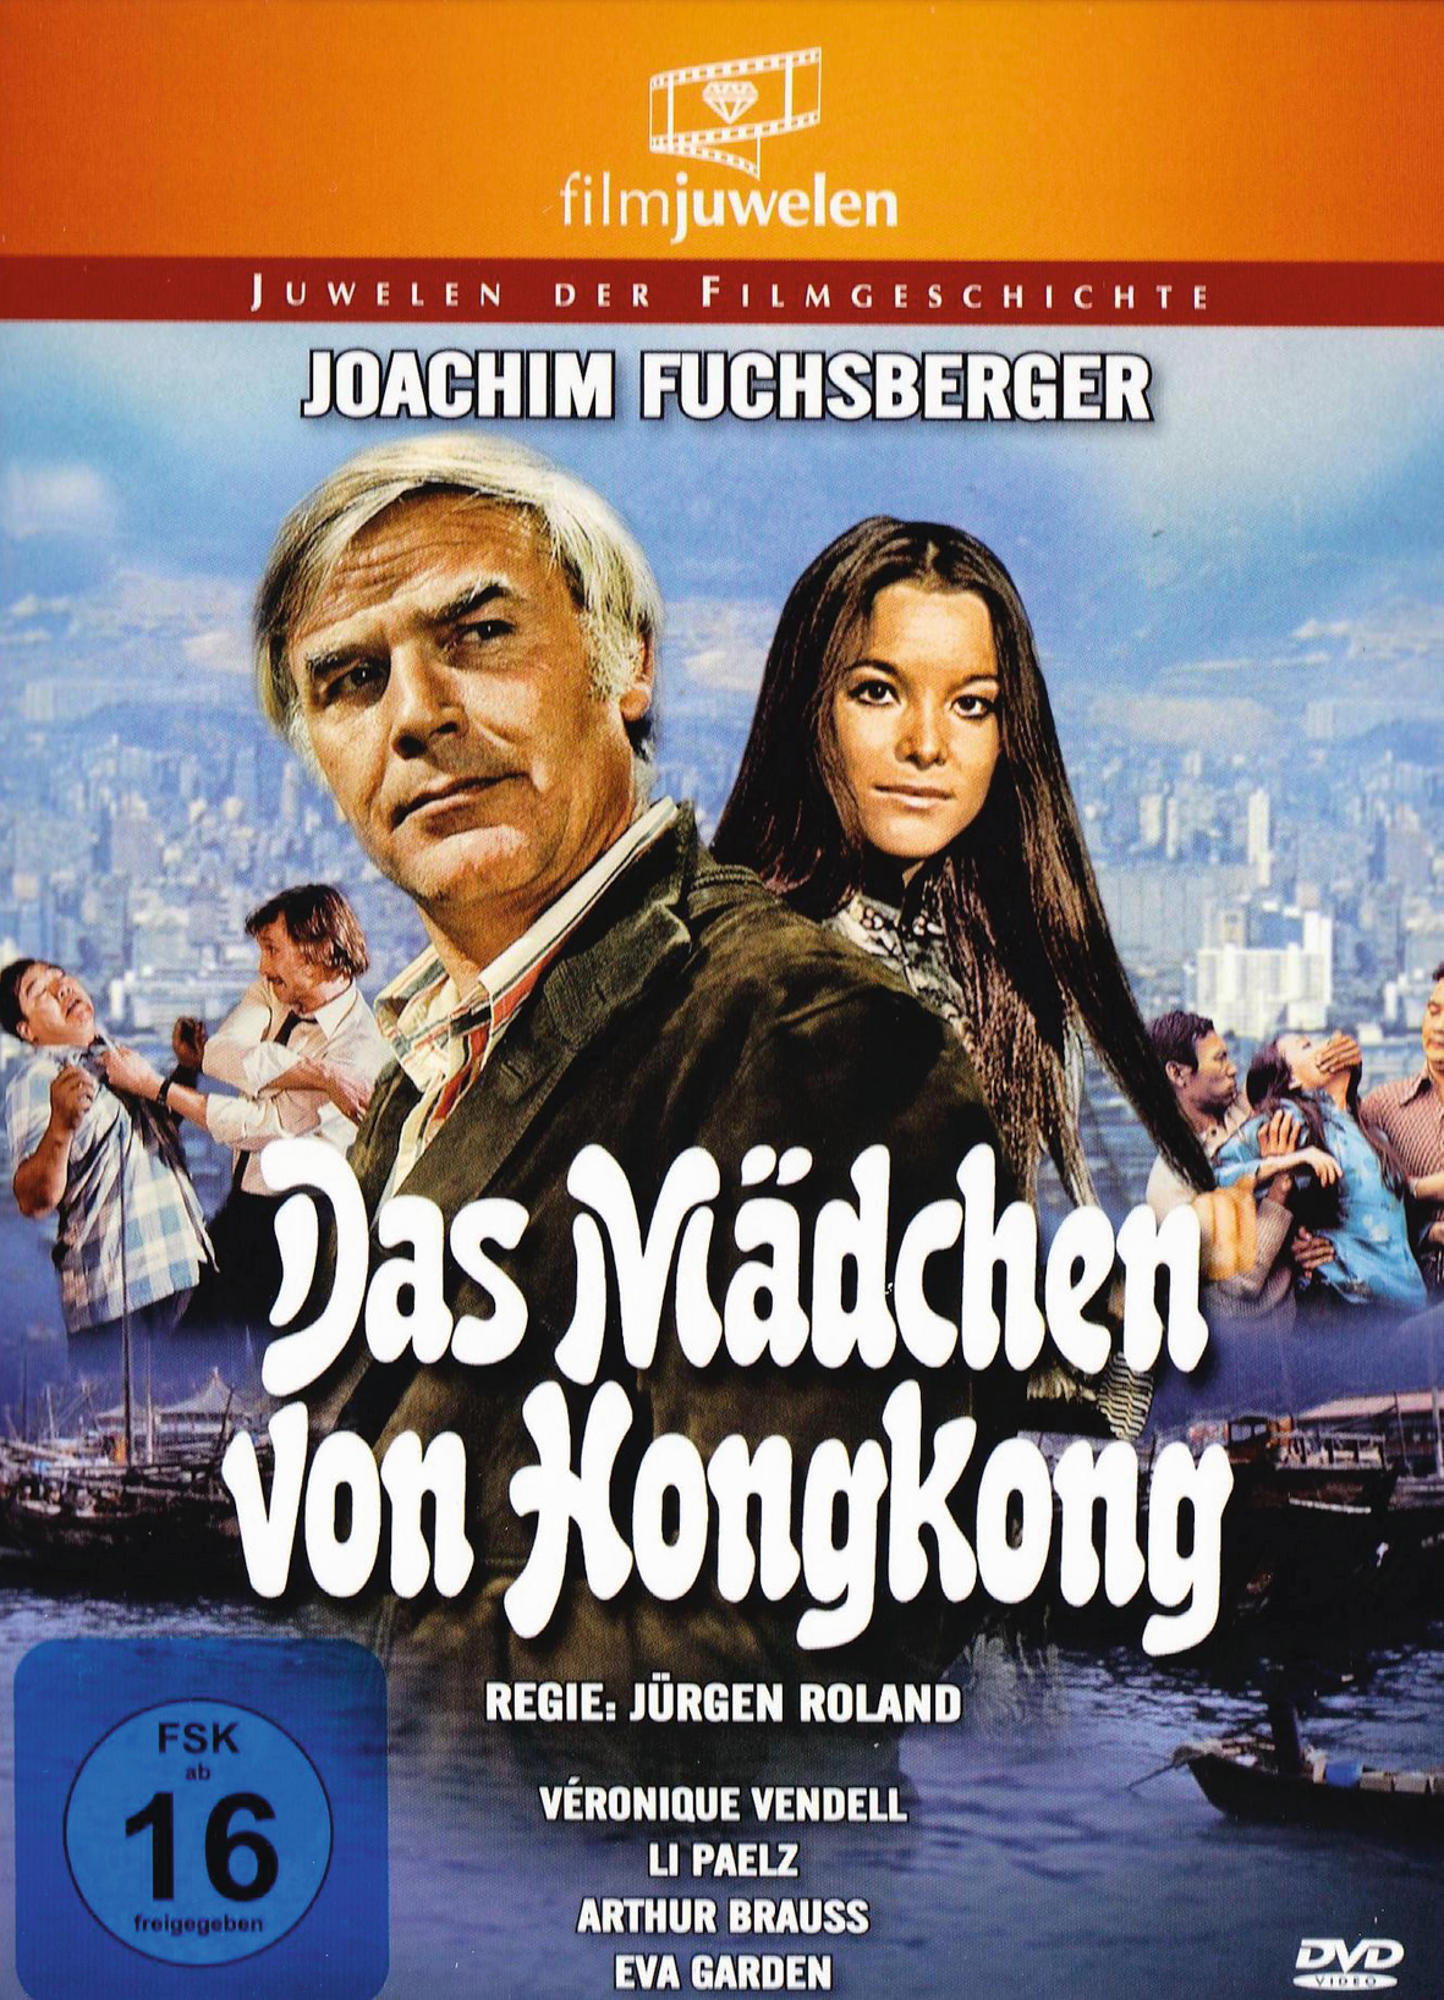 DAS MÄDCHEN REISSER) DVD HONGKONG (DIE HONGKONG VON